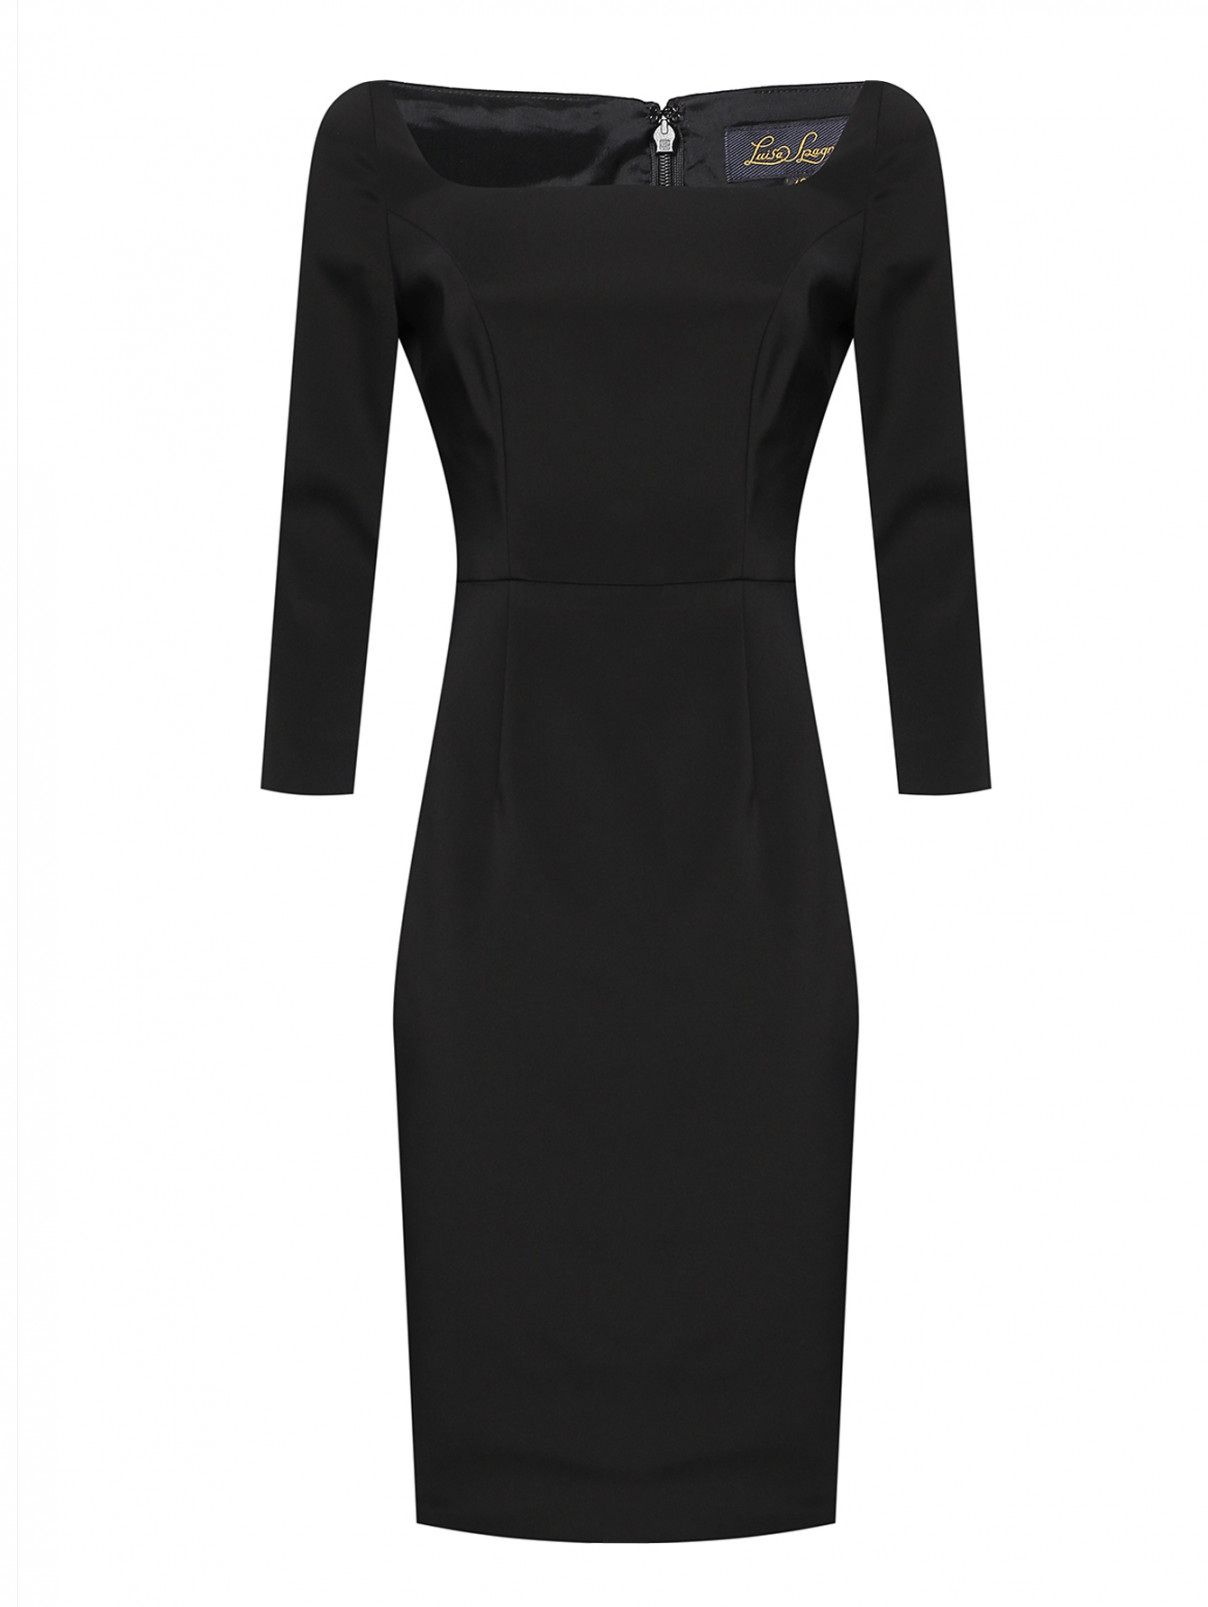 Платье-футляр с рукавами 3/4 Luisa Spagnoli  –  Общий вид  – Цвет:  Черный